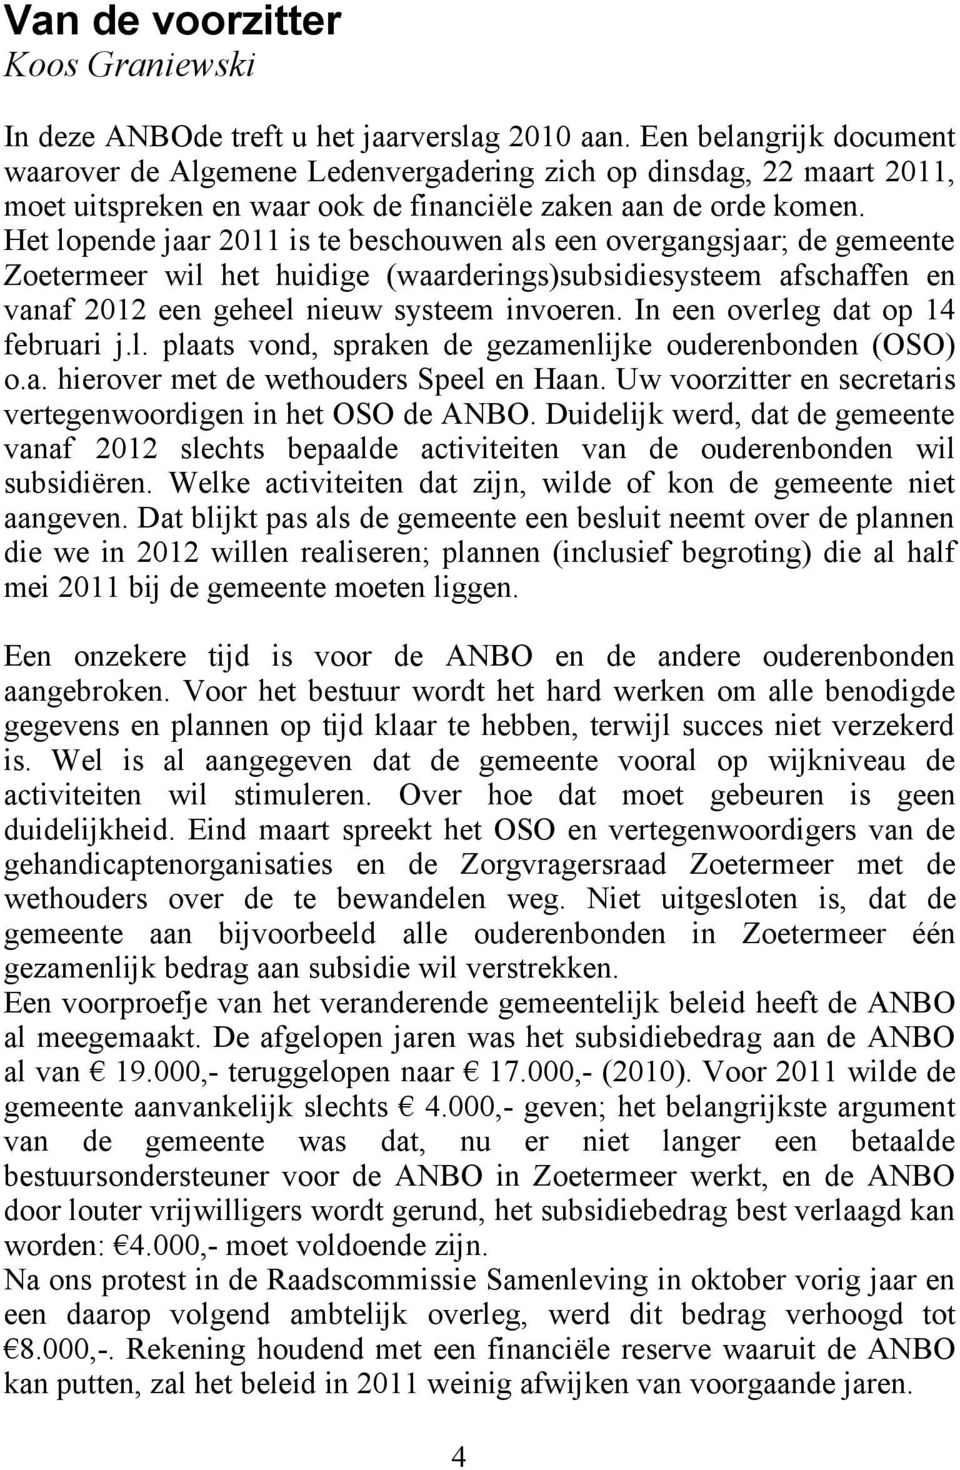 Het lopende jaar 2011 is te beschouwen als een overgangsjaar; de gemeente Zoetermeer wil het huidige (waarderings)subsidiesysteem afschaffen en vanaf 2012 een geheel nieuw systeem invoeren.